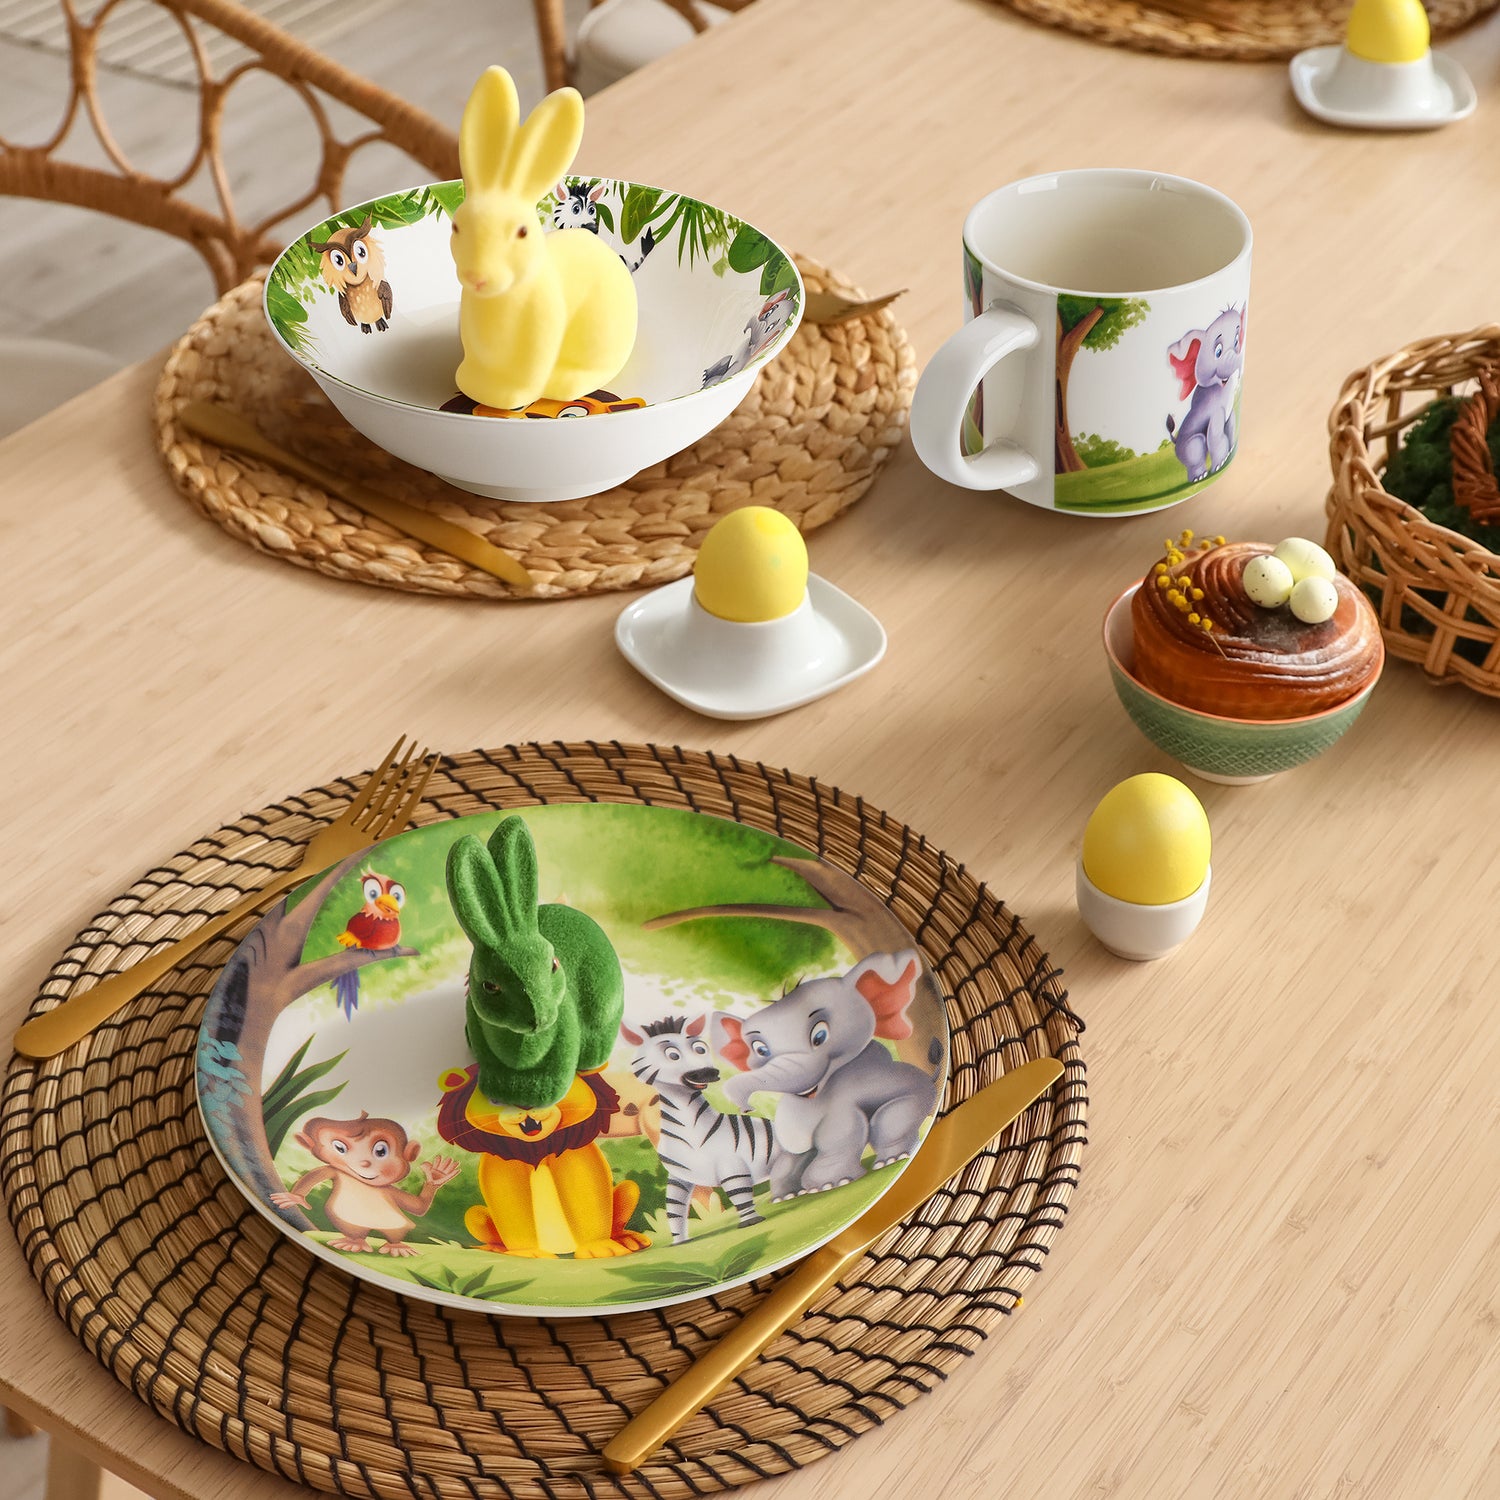 MIAMIO 3er-Set Kindergeschirr mit Jungle Aufdruck auf gedecktem Tisch mit Osterhasen und -Eiern